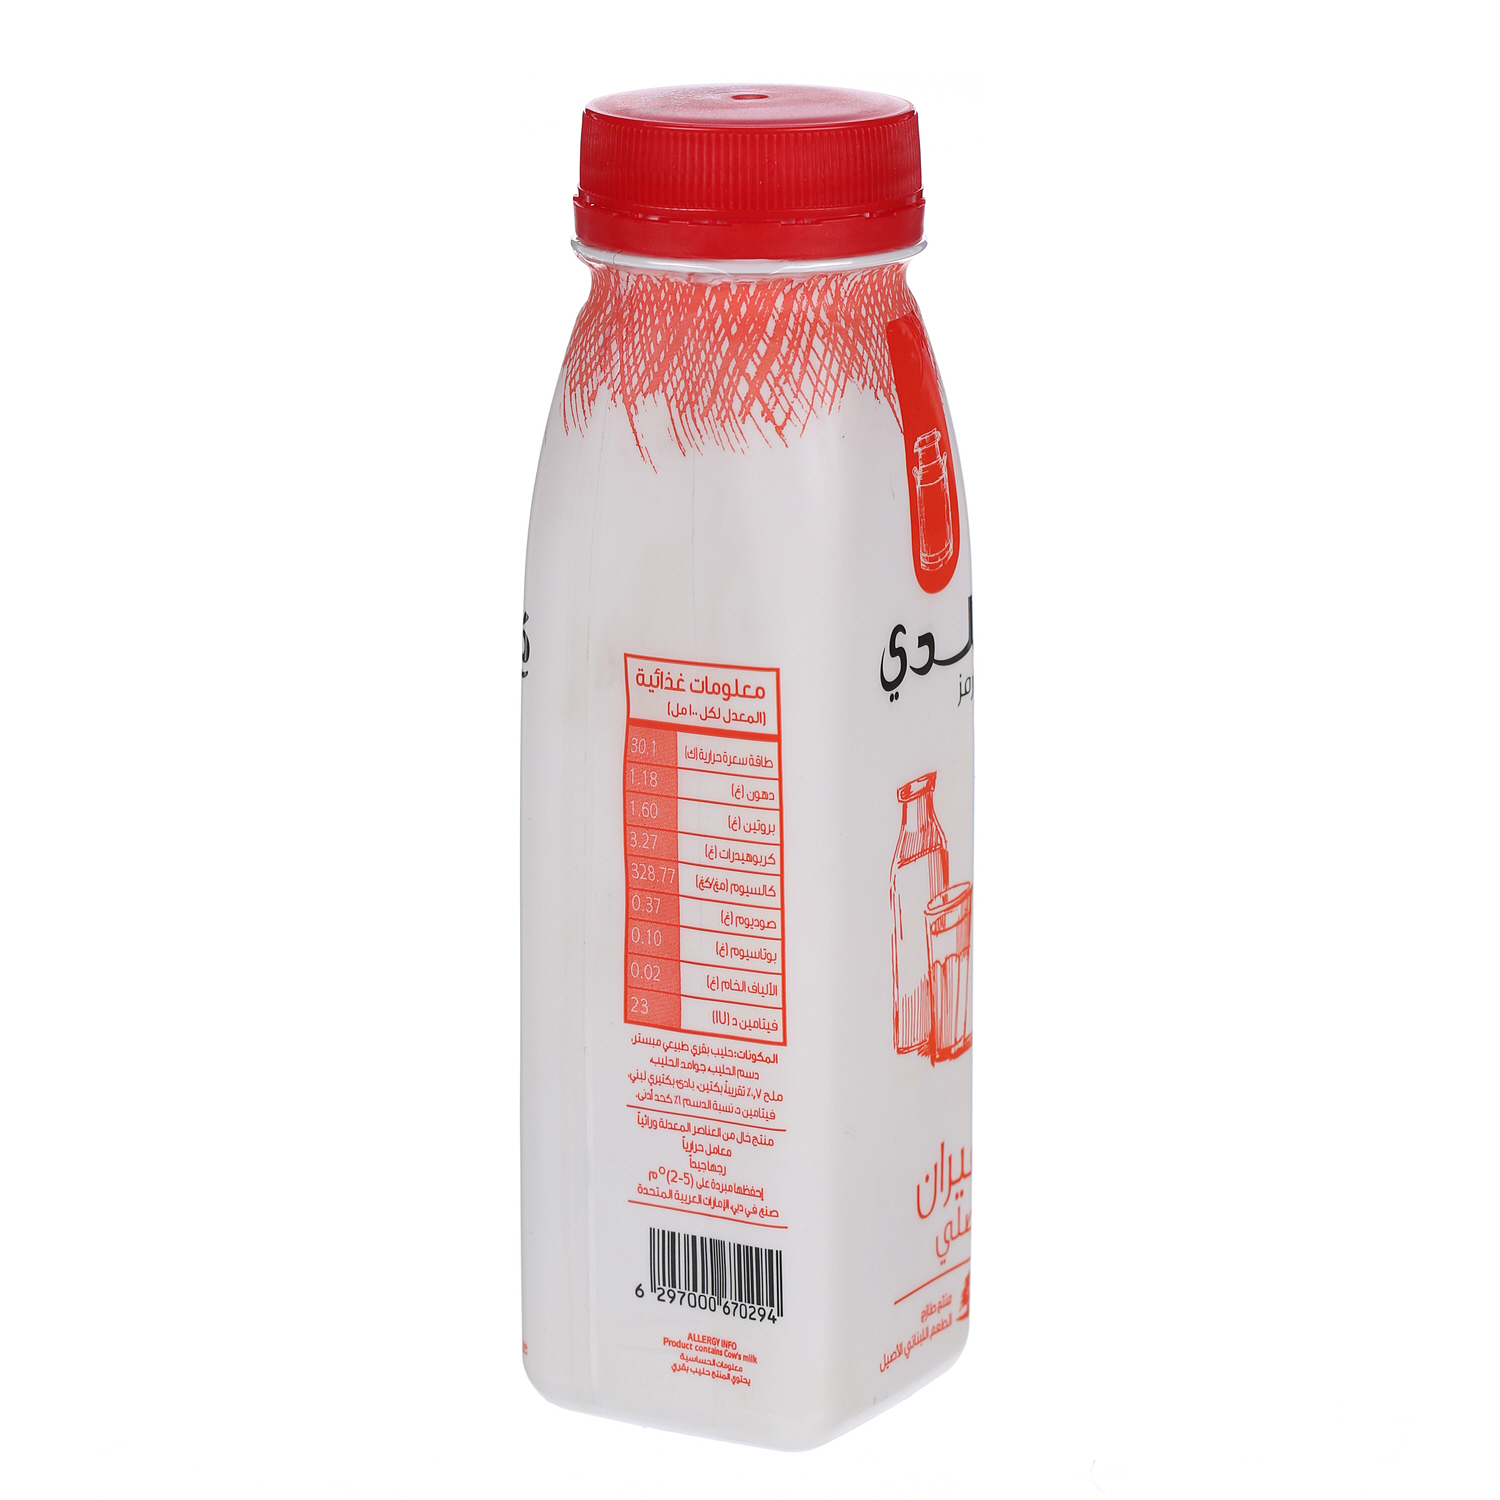 Balade Ayran Original 225 ml